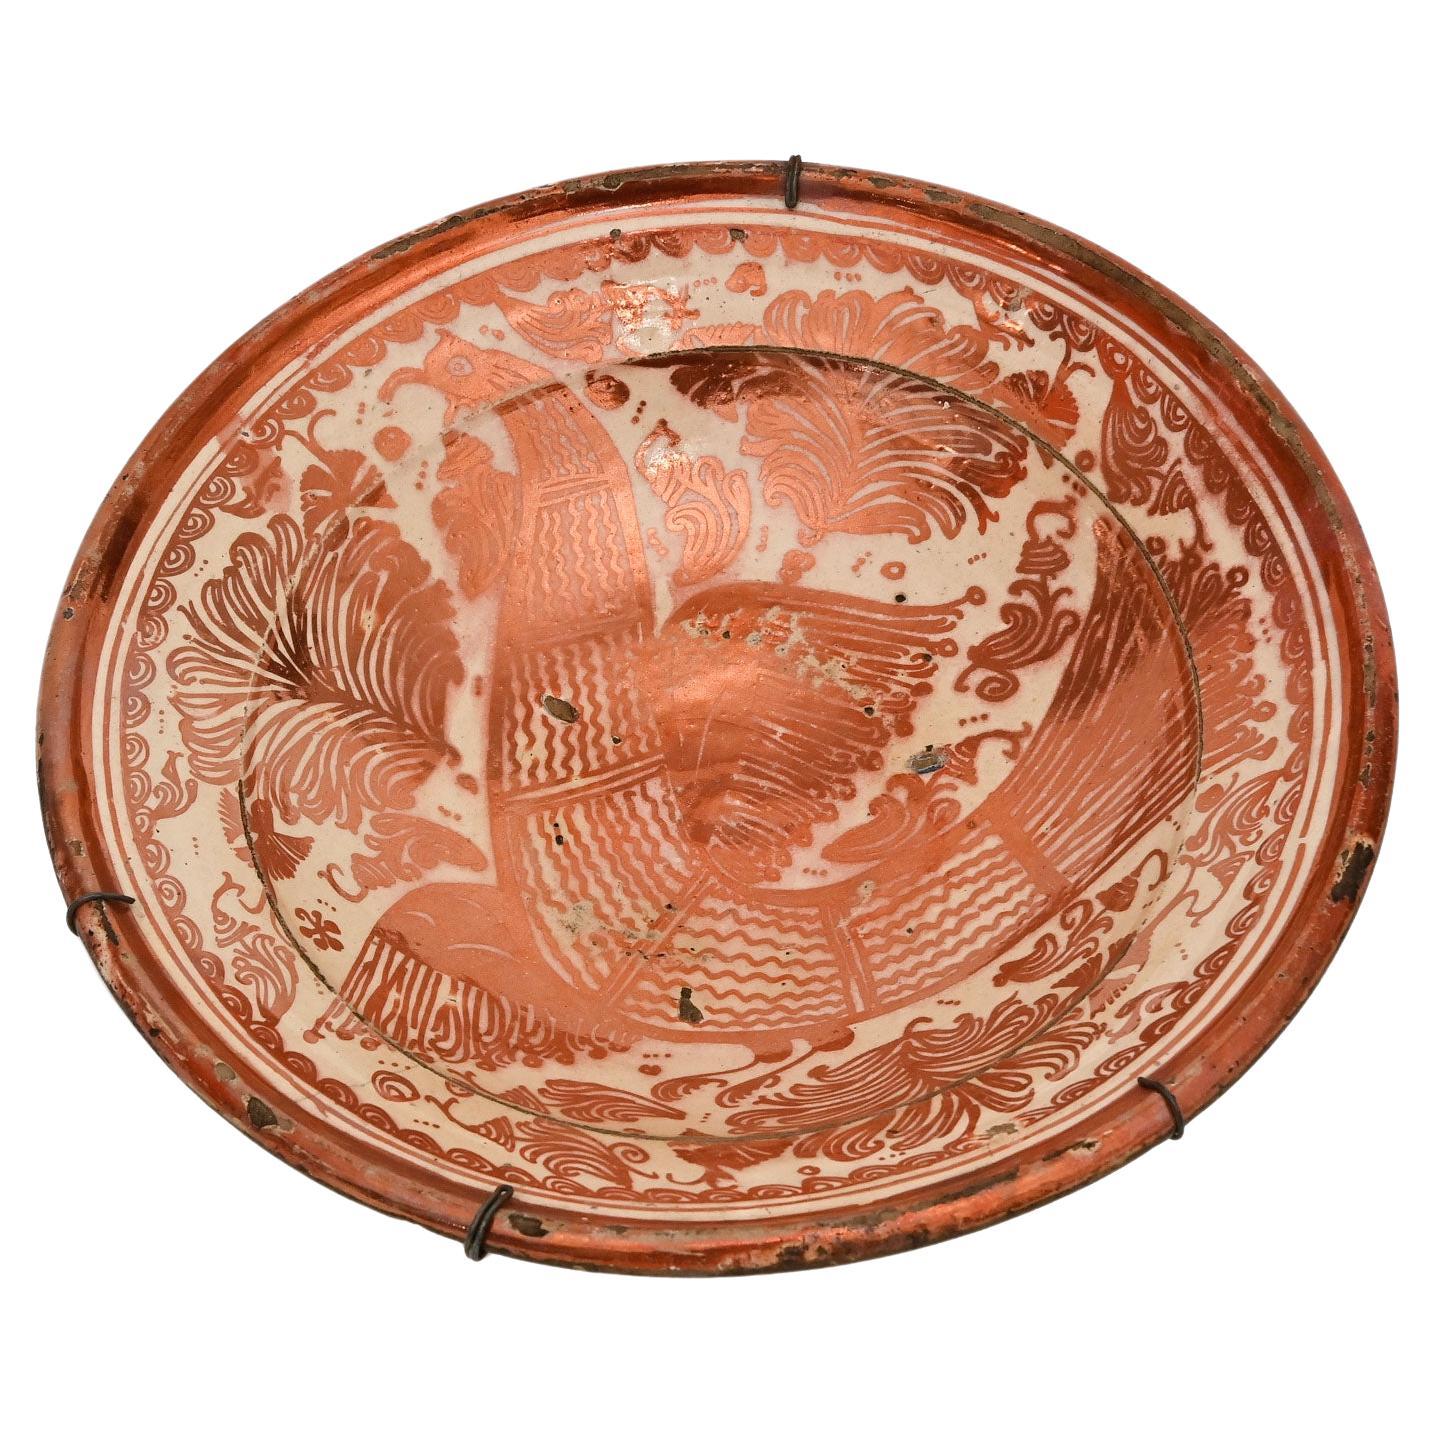 Spanien Manises Valencia-Keramikteller aus dem 18. Jahrhundert mit Lüster-Dekor